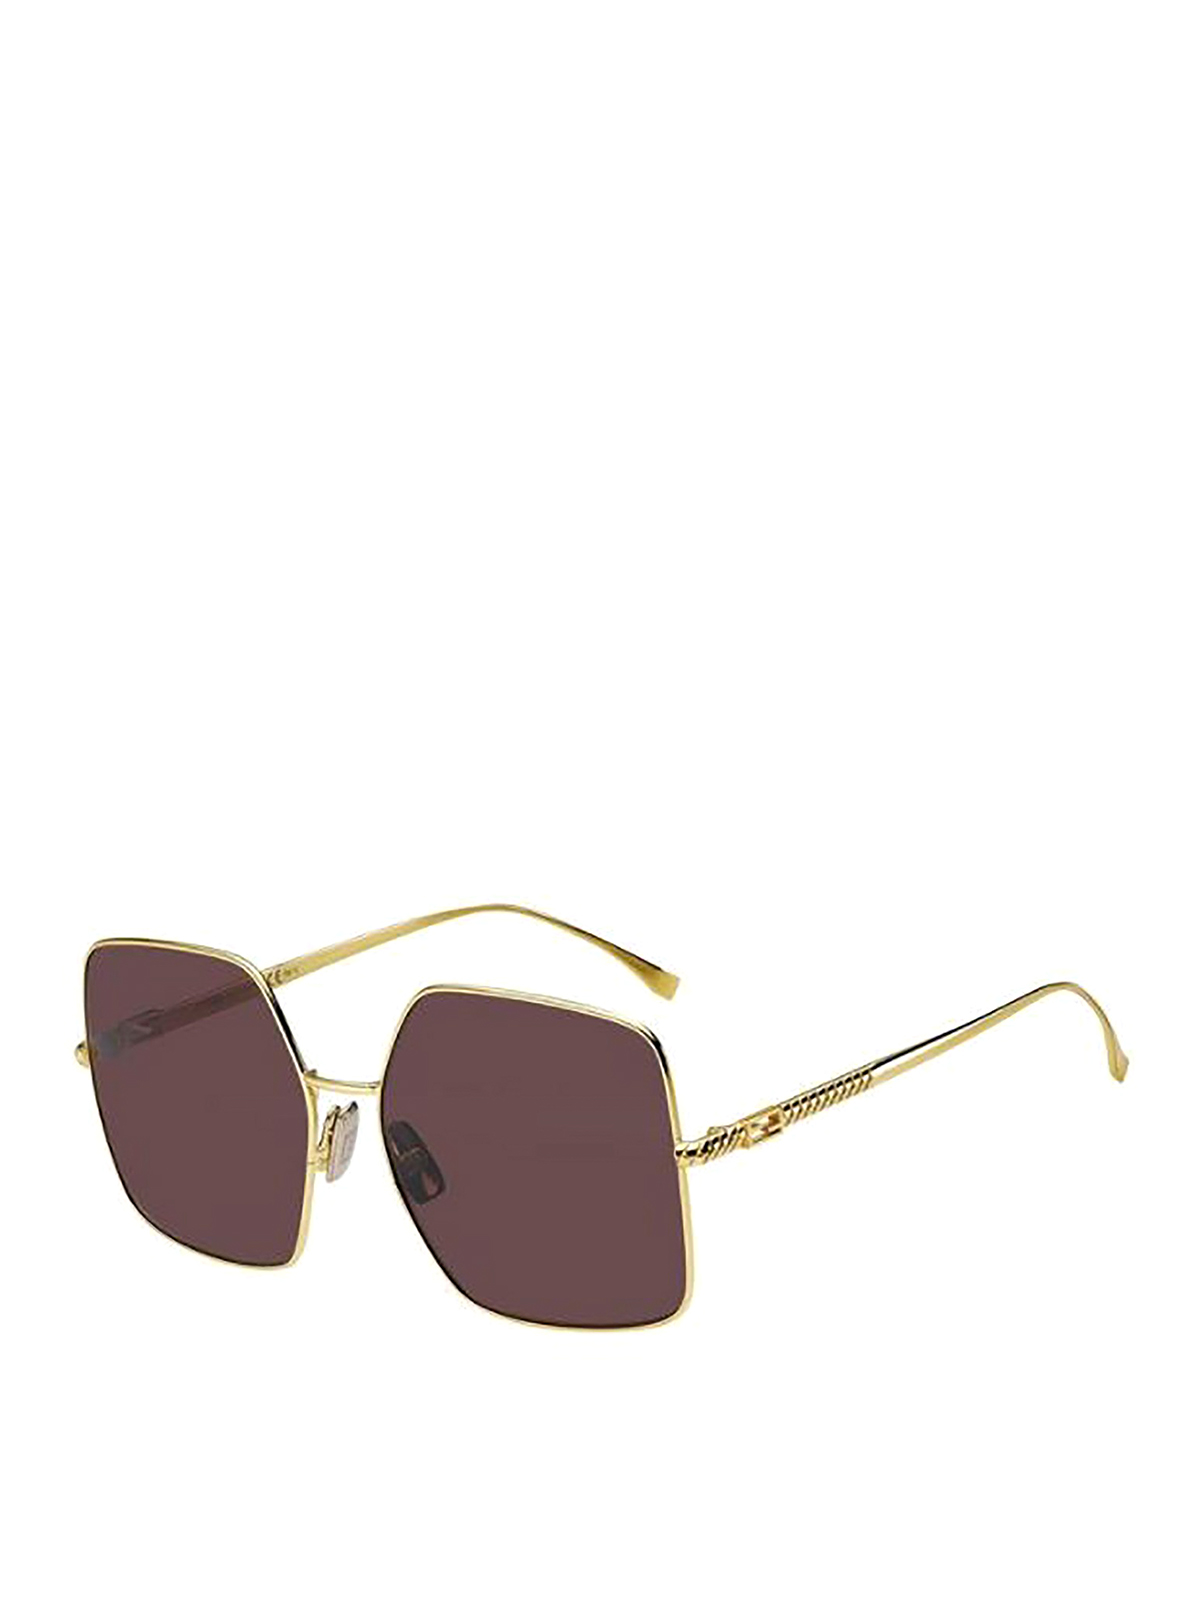 Fendi Dark Lens Baguette Sunglasses In Gold